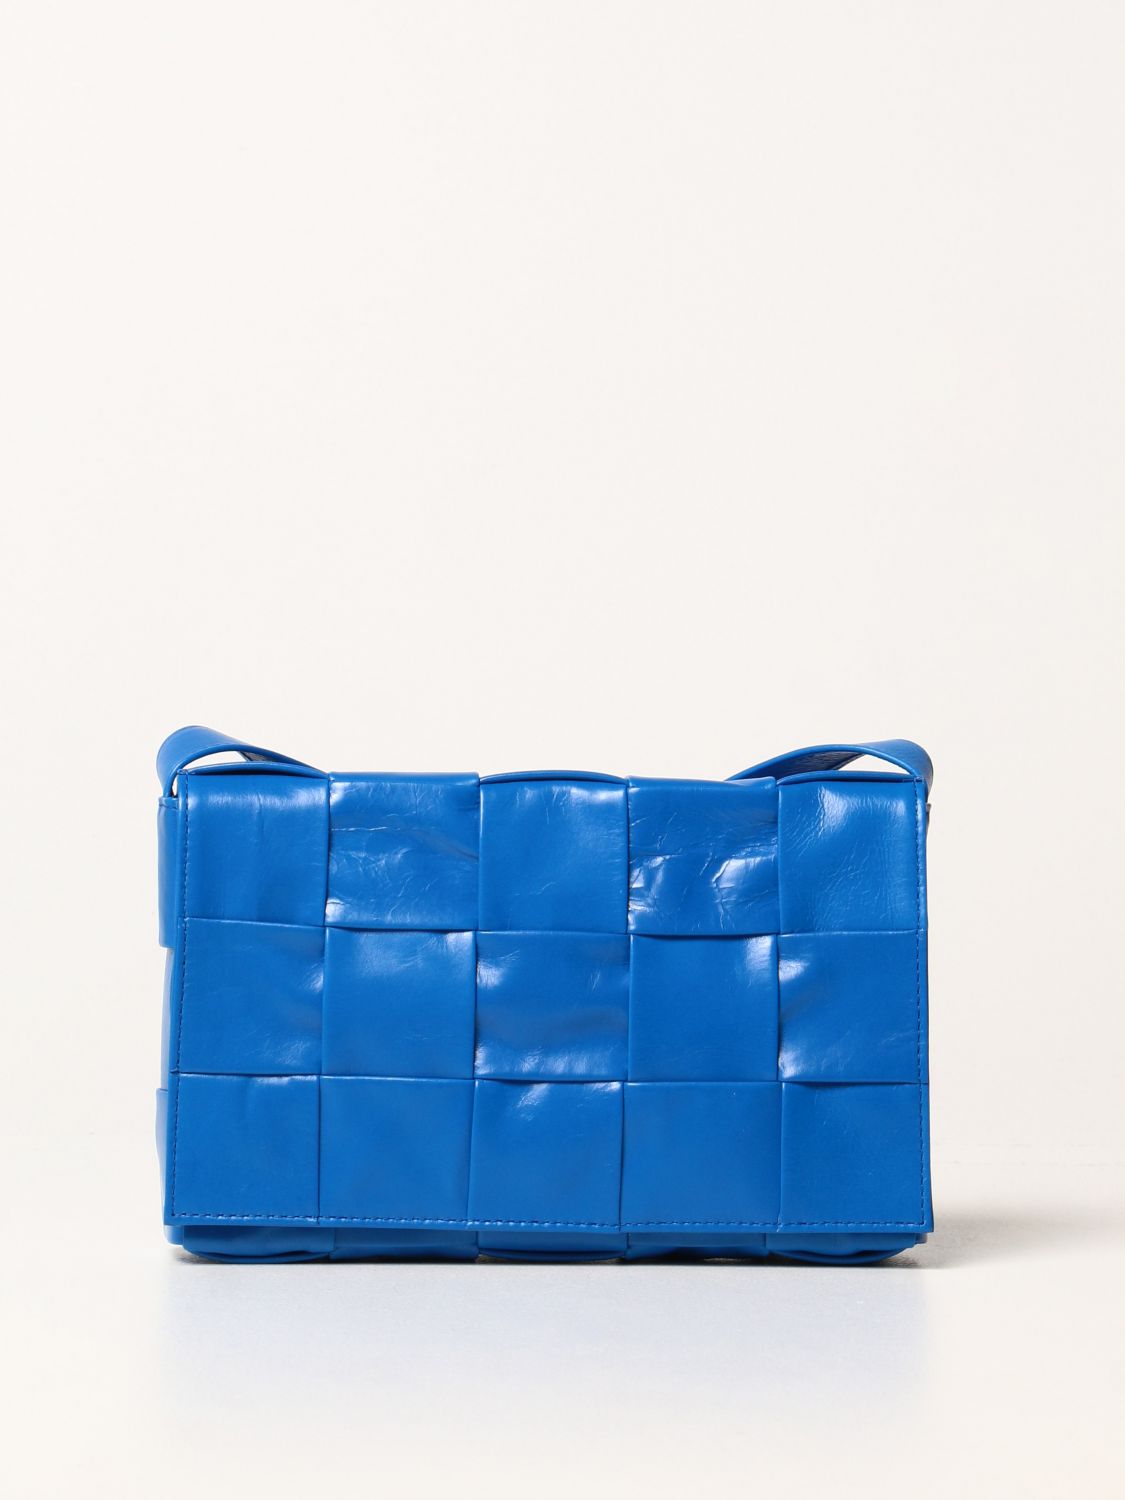 BOTTEGA VENETA: Cassette bag in woven leather - Cobalt | Bottega Veneta ...